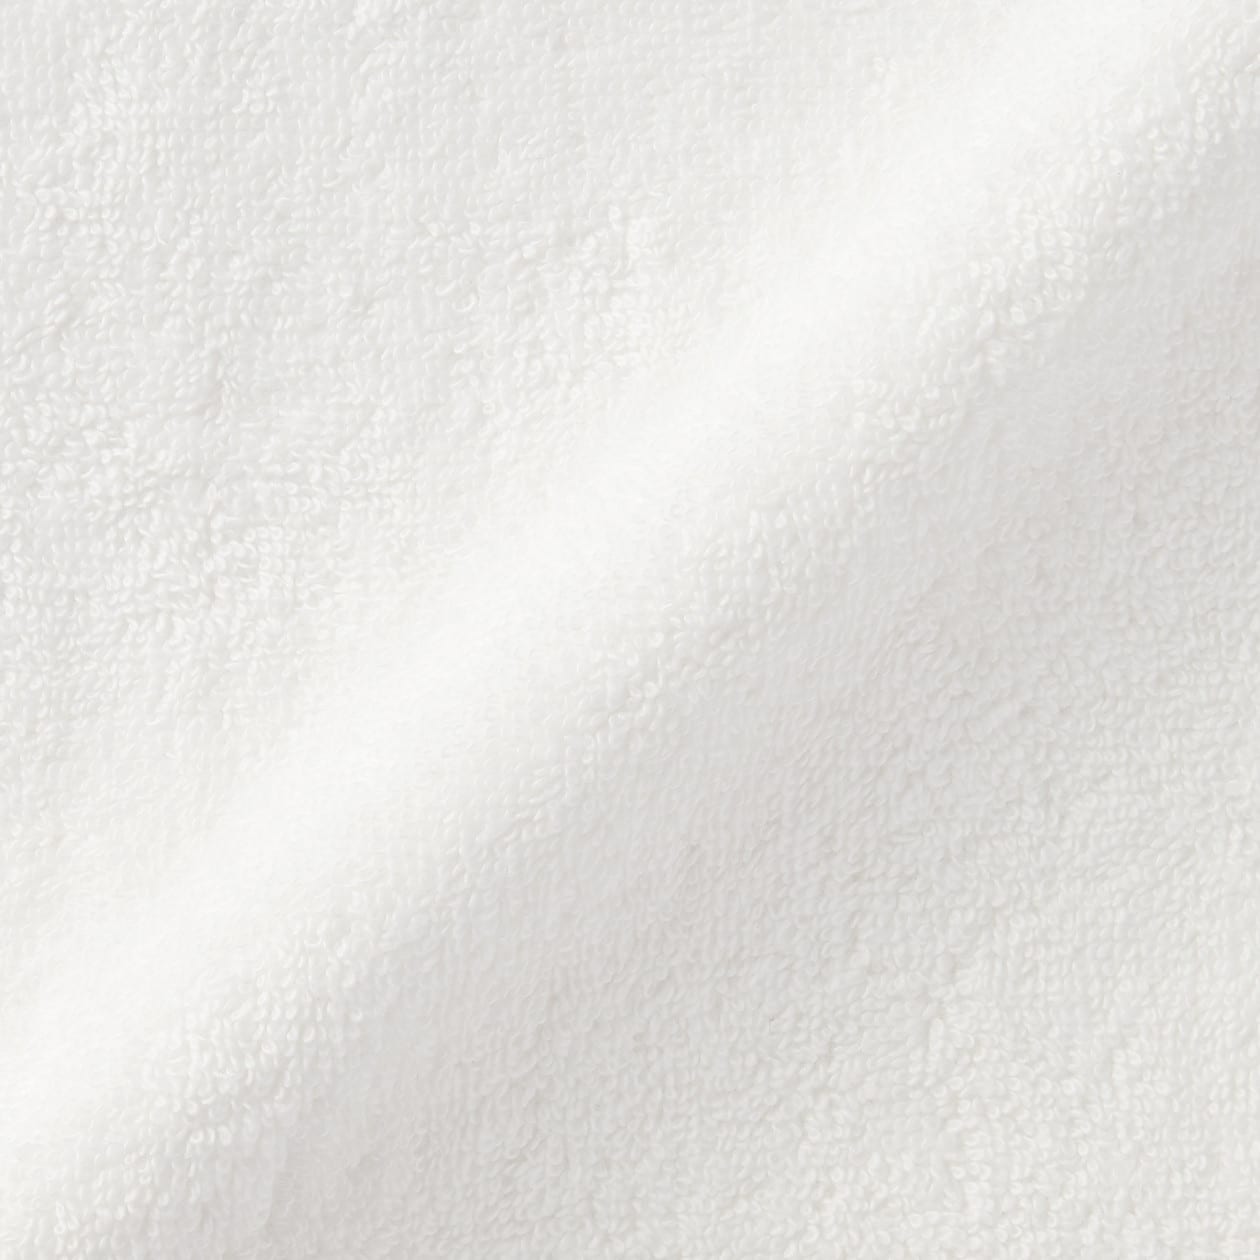 無印良品 パイル織りフェイスタオル 4枚 34×85cm オフ白 良品計画1,160円 保障できる 34×85cm